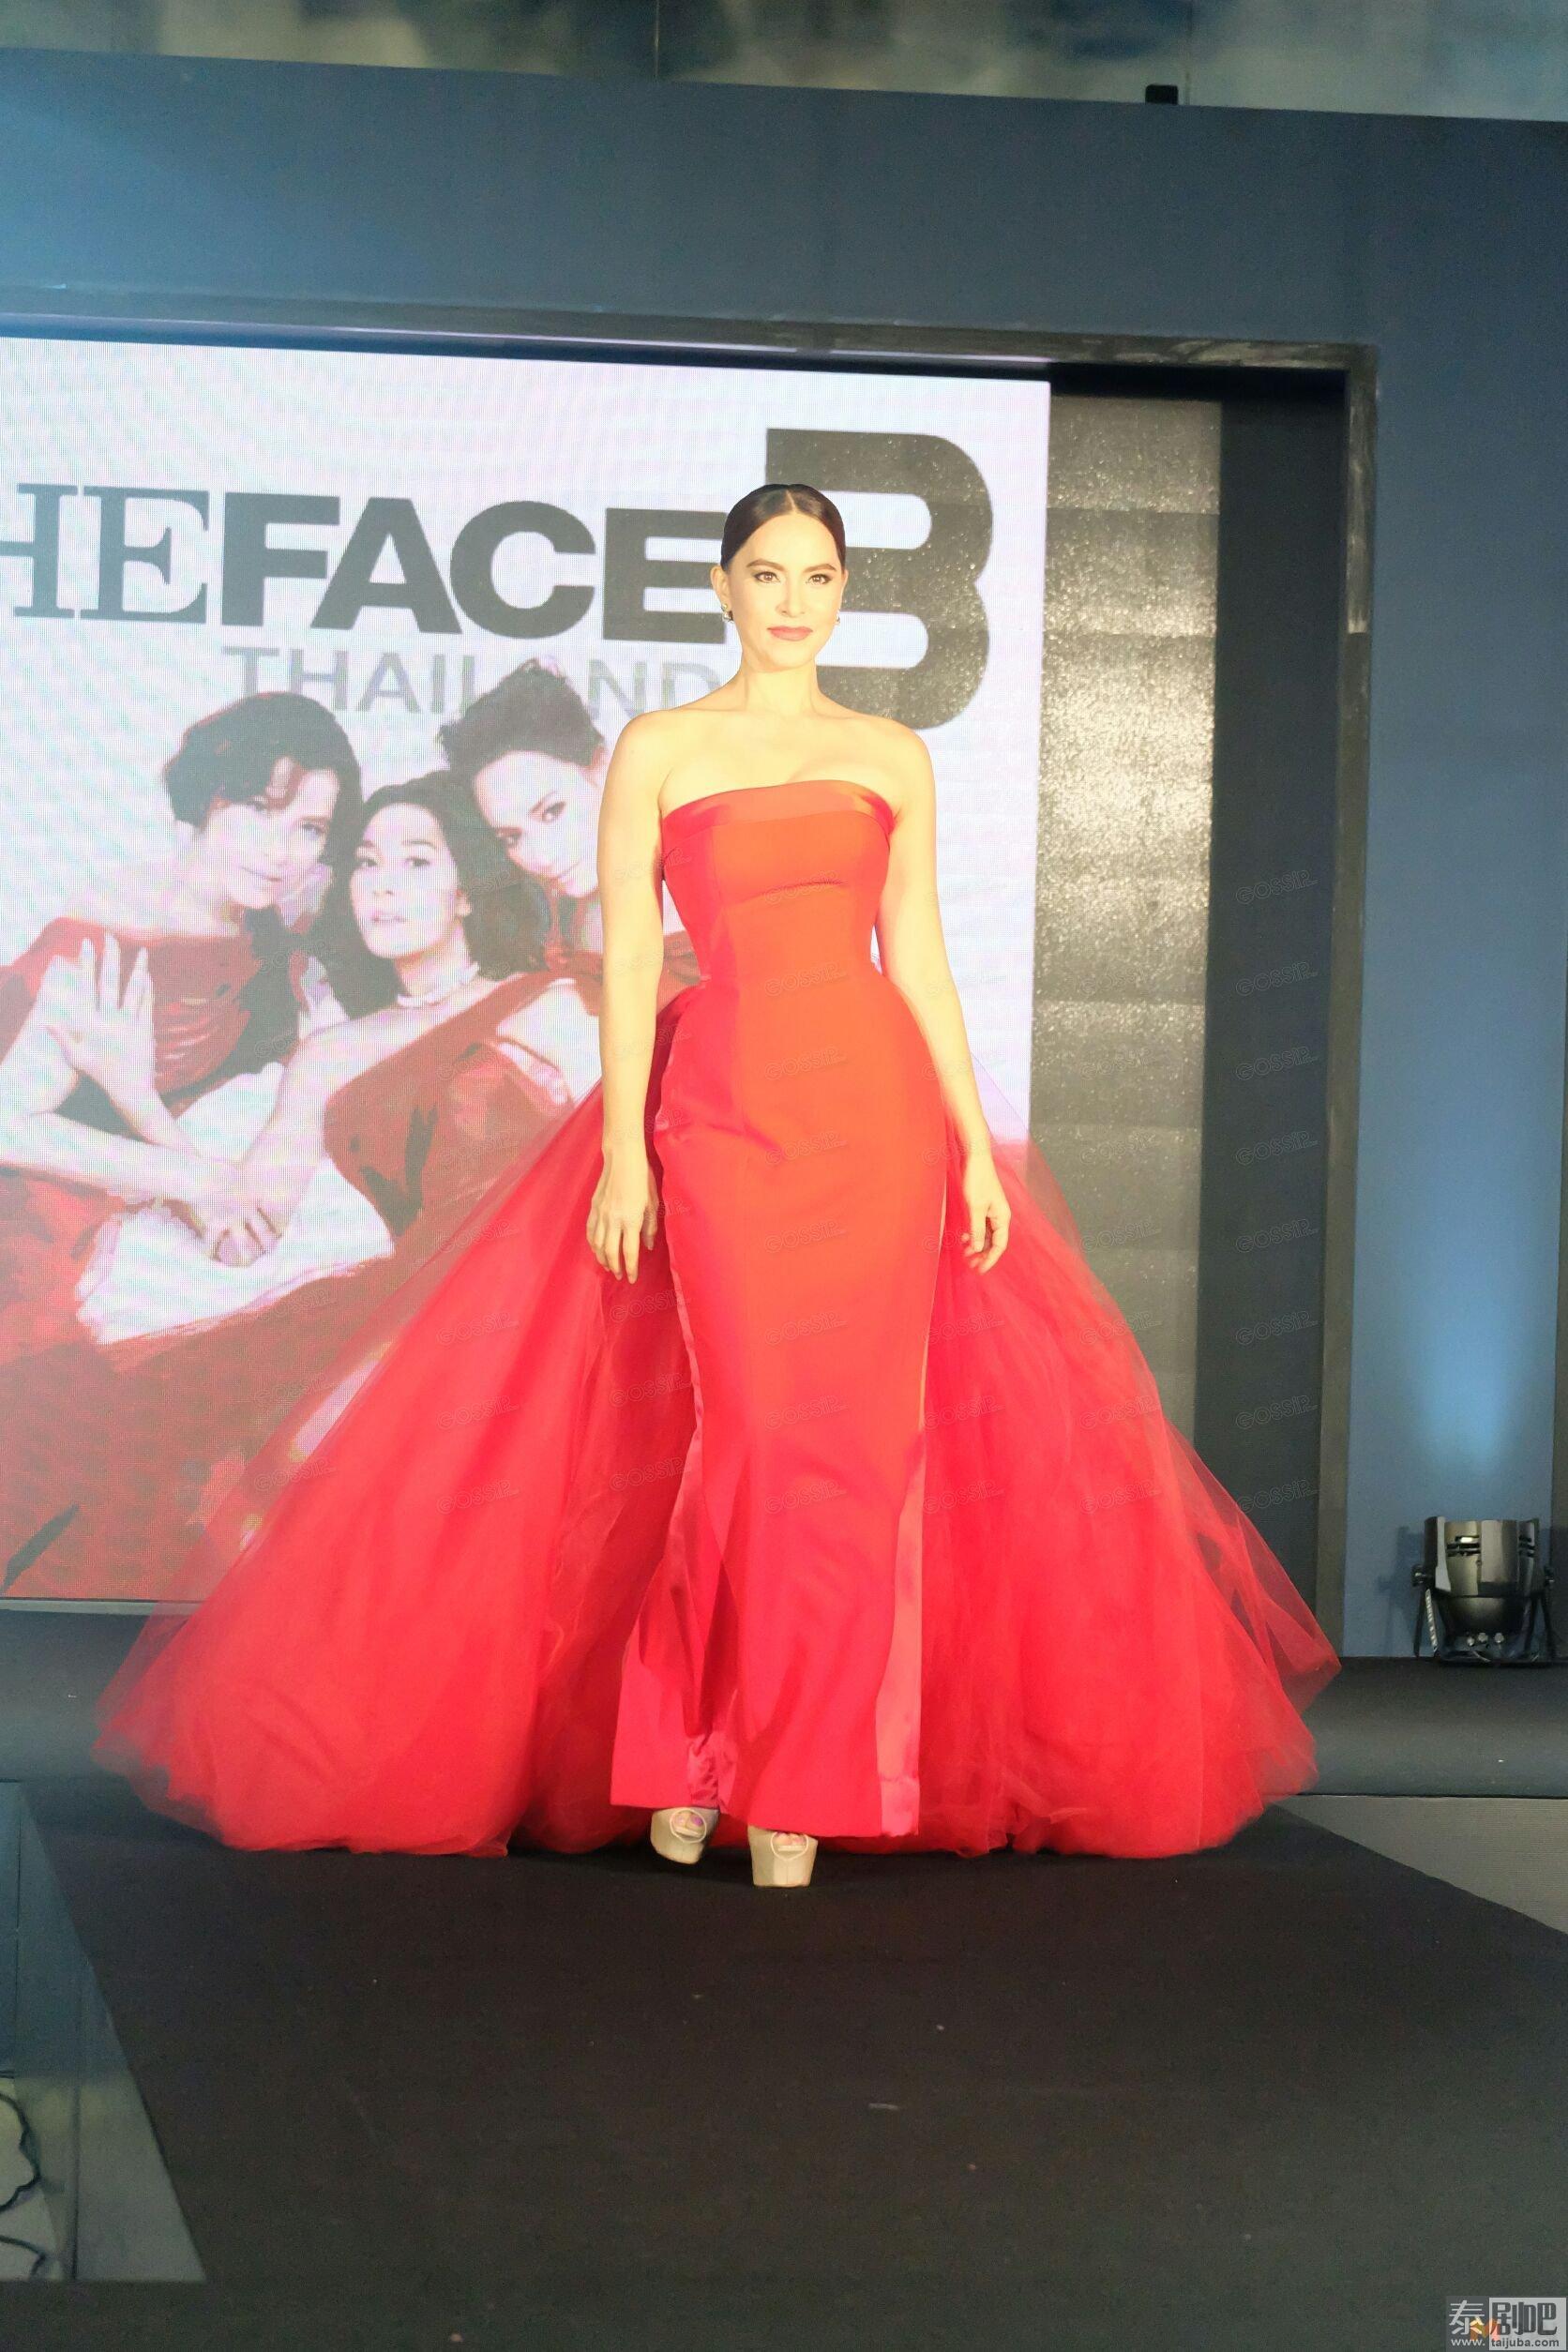 泰国选秀节目“The Face 3”将开播 新导师Marsha强势补位